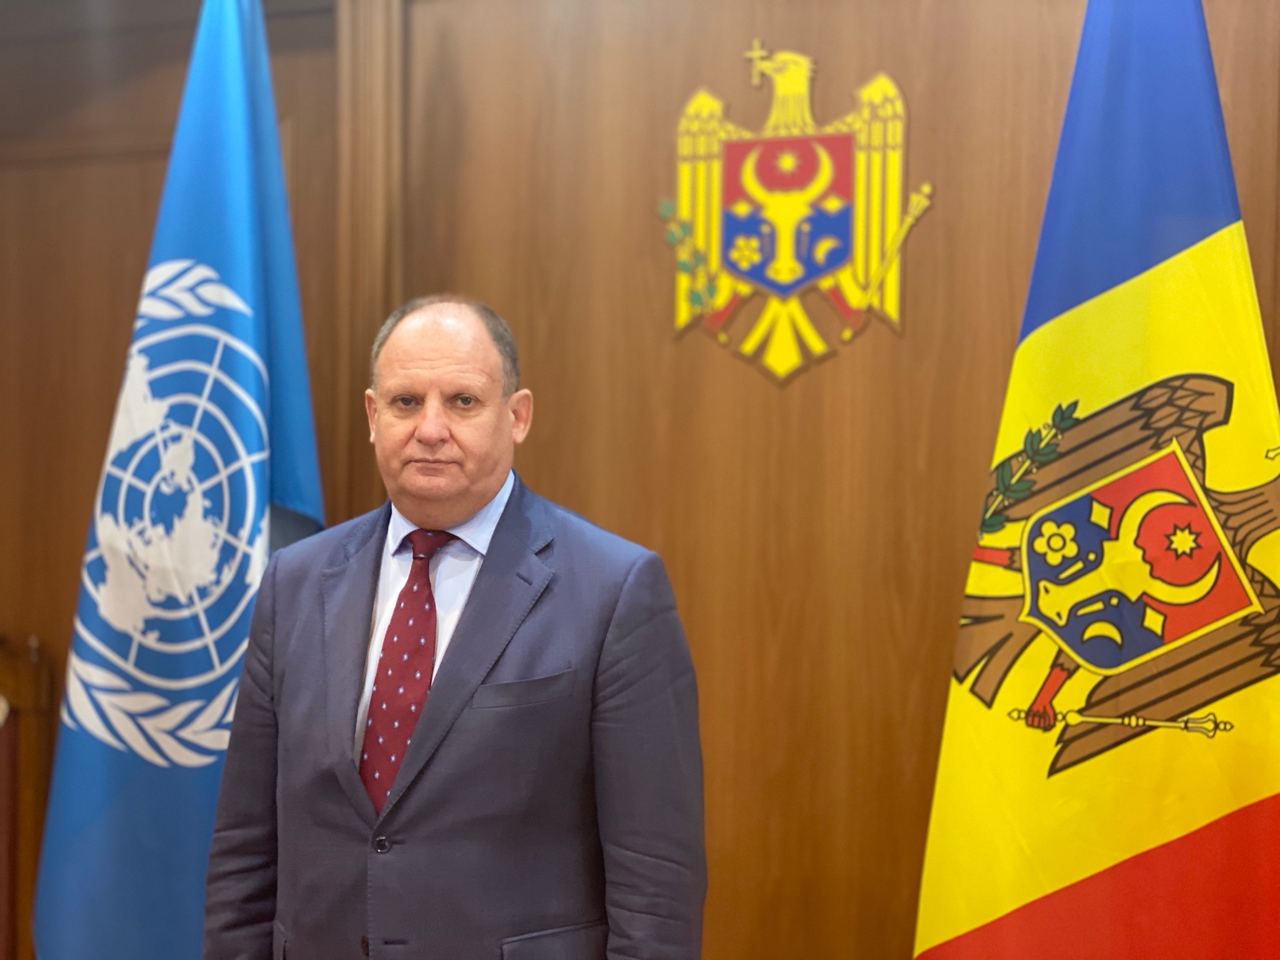 Reprezentantul Republicii Moldova la ONU a provocat dezbateri aprinse, după ce a prezentat un proiect de rezoluție privind educația sexuală a copiilor